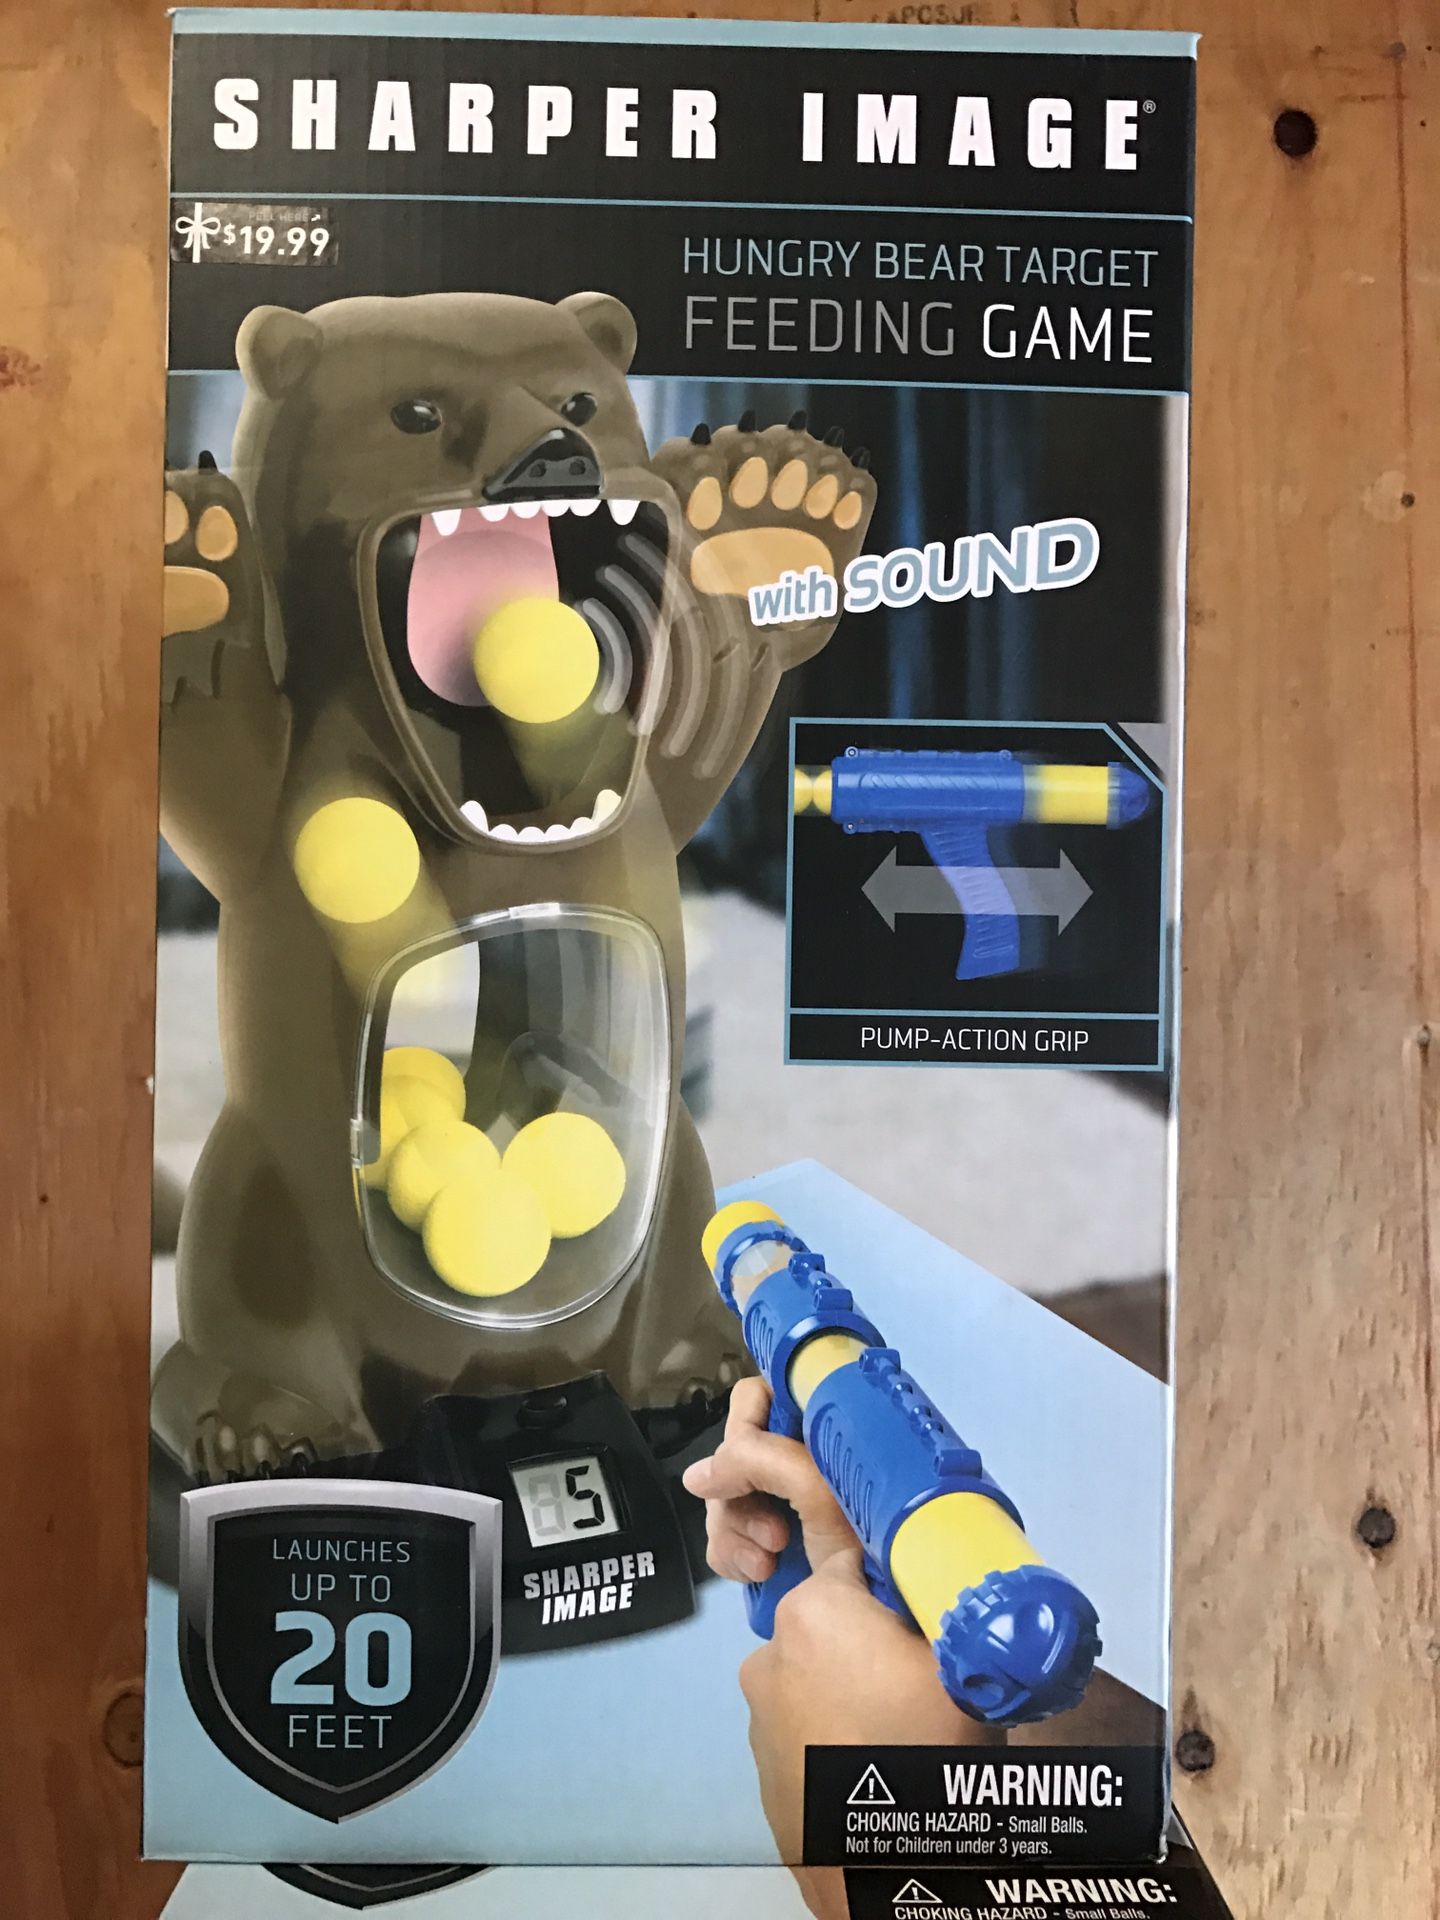 Bear feeding target game sharper image